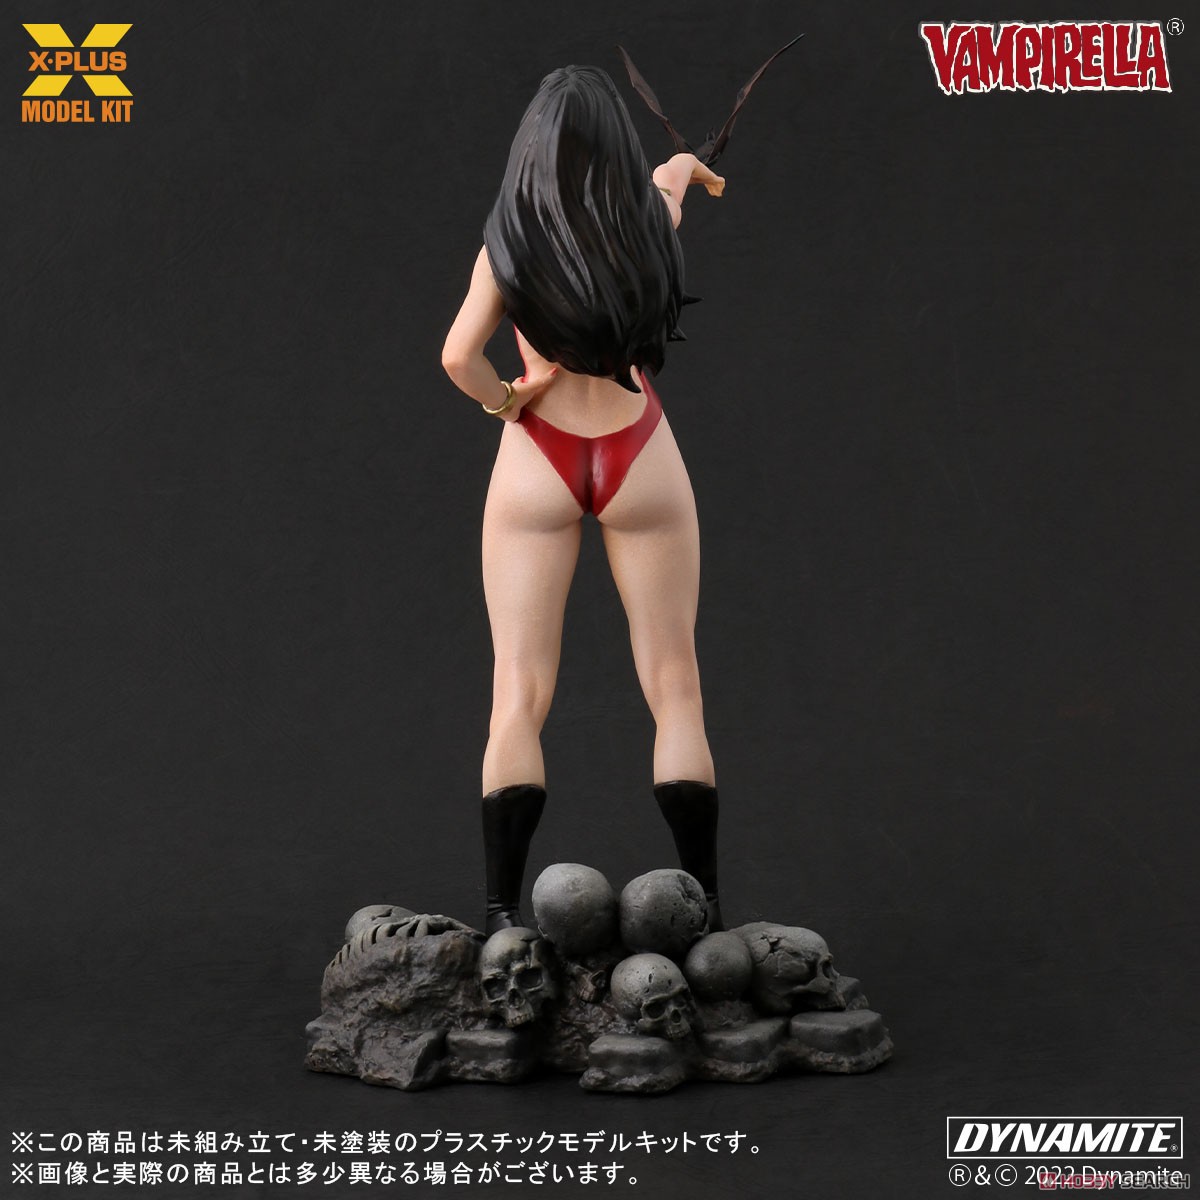 Vampirella『ヴァンピレラ ホセ・ゴンザレス エディション 』1/8スケール プラスチック モデルキット-003